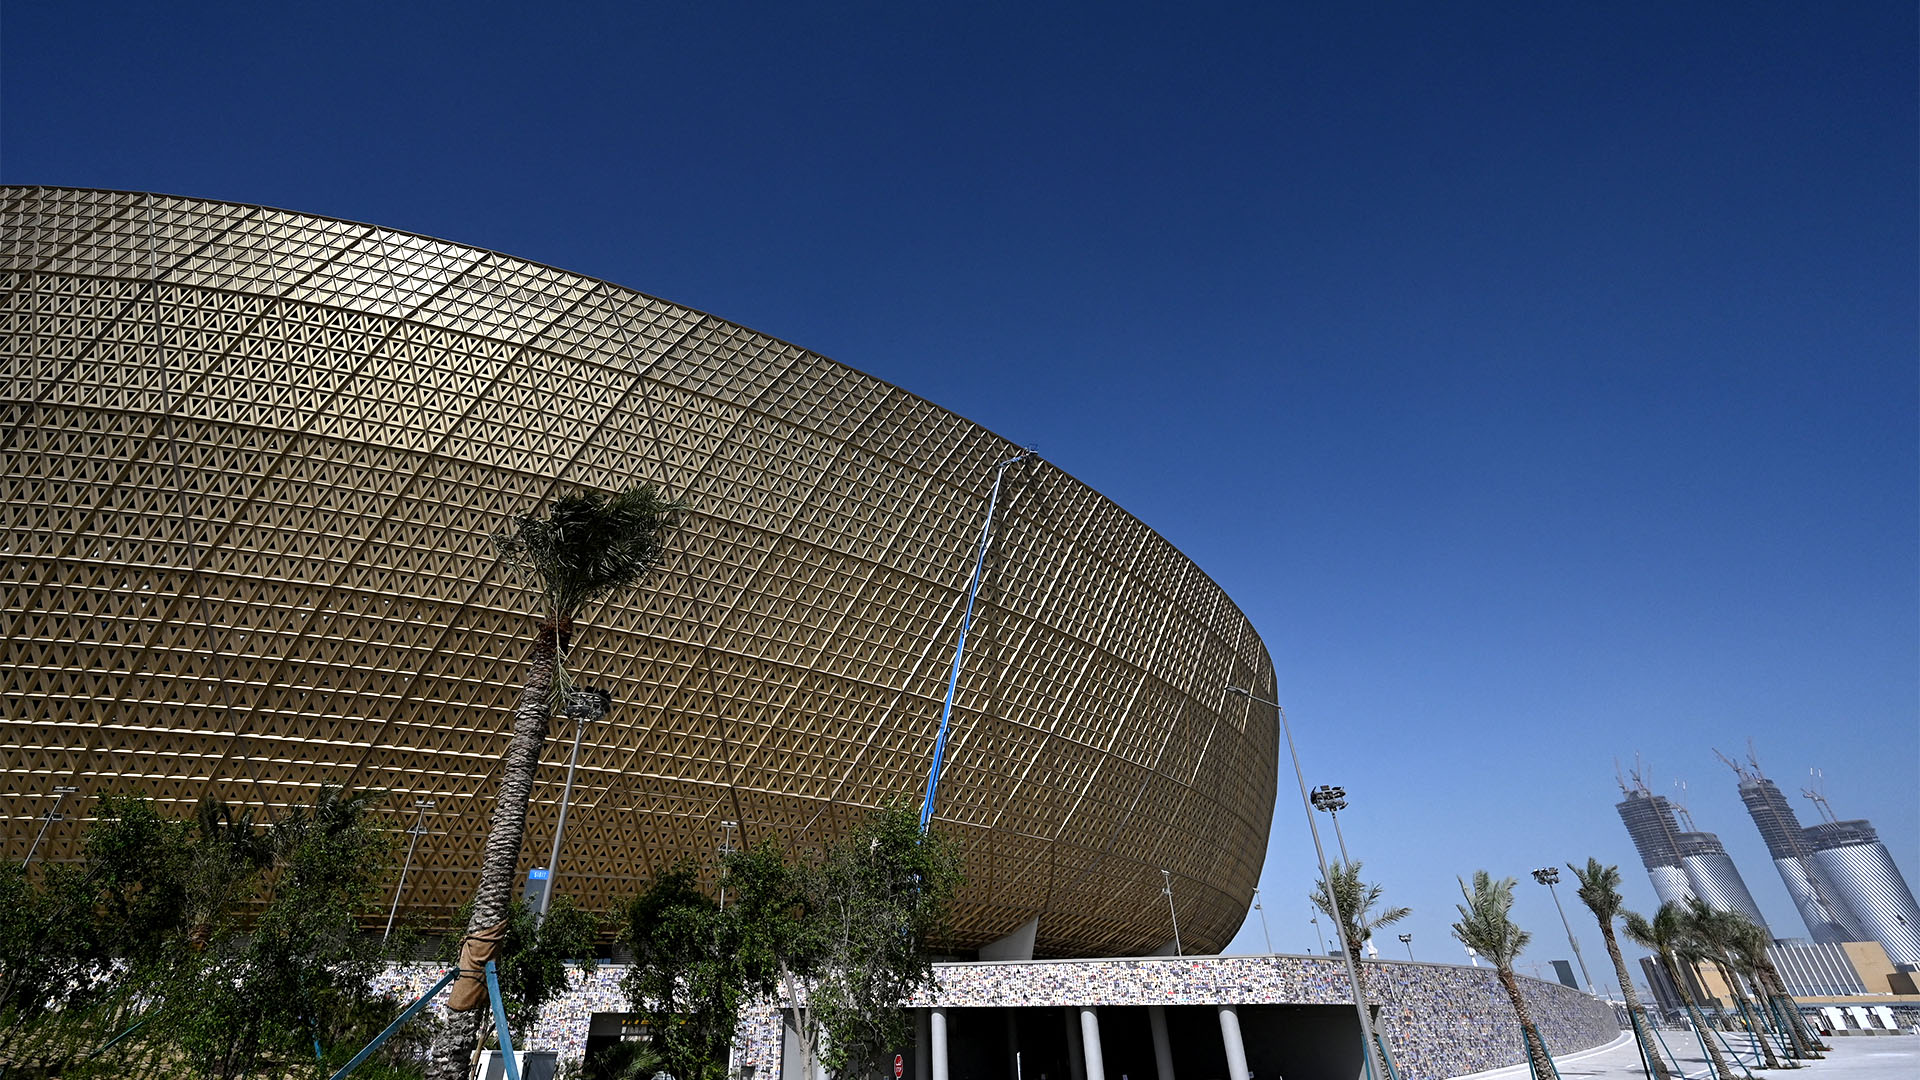 El estadio Lusail, sede de la final de la Copa del Mundo Qatar 2022 el 18 de diciembre (GABRIEL BOUYS / AFP)